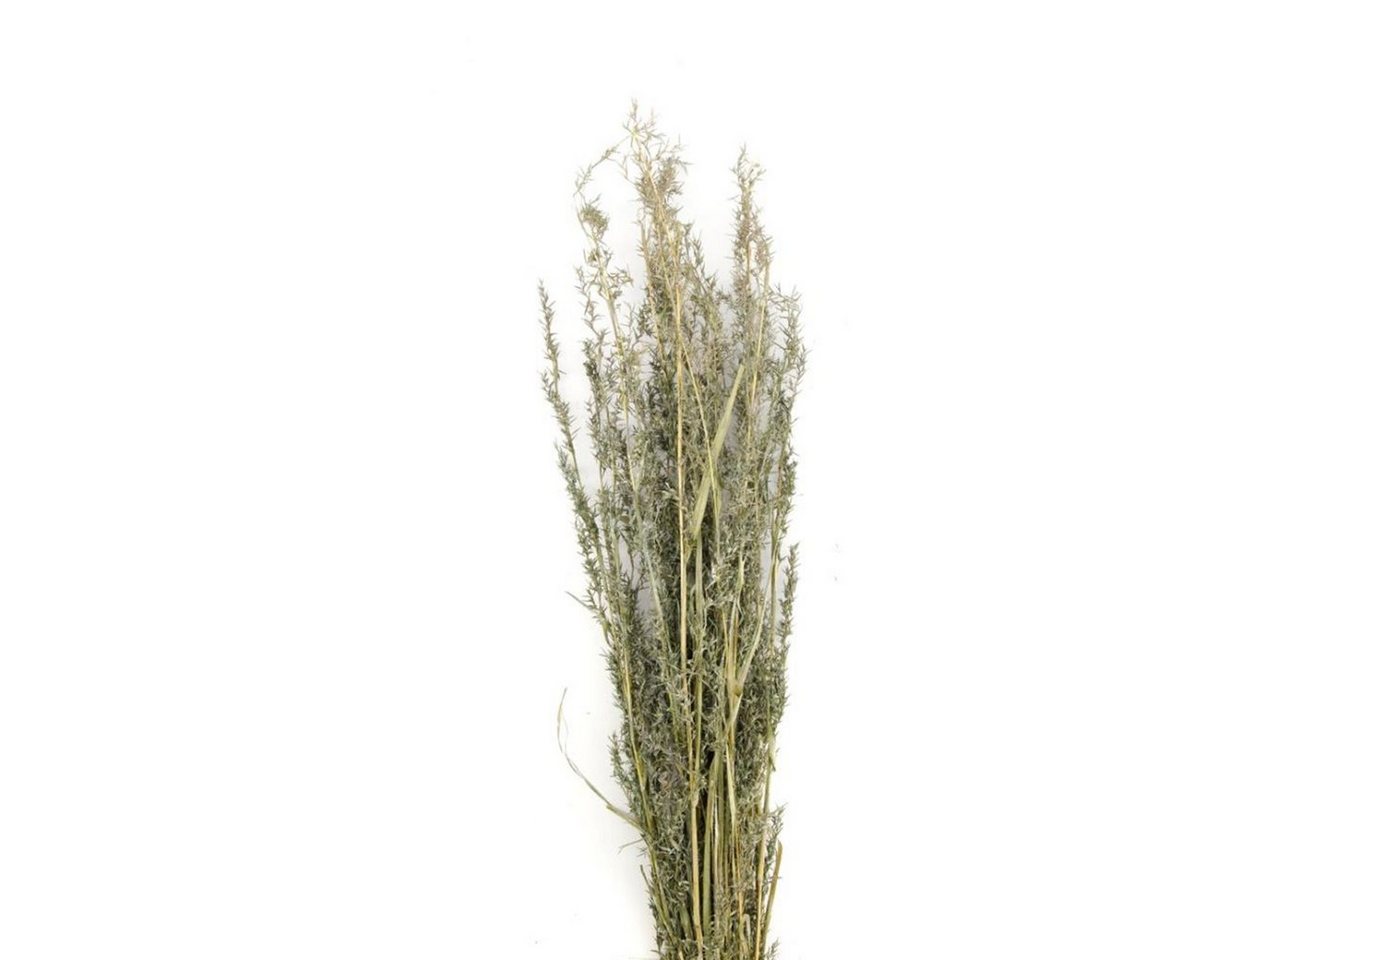 Trockenblume Alfonso Gras grün - alfonso grass - Lolium perenne - 100 cm - 100 g, DIJK von DIJK